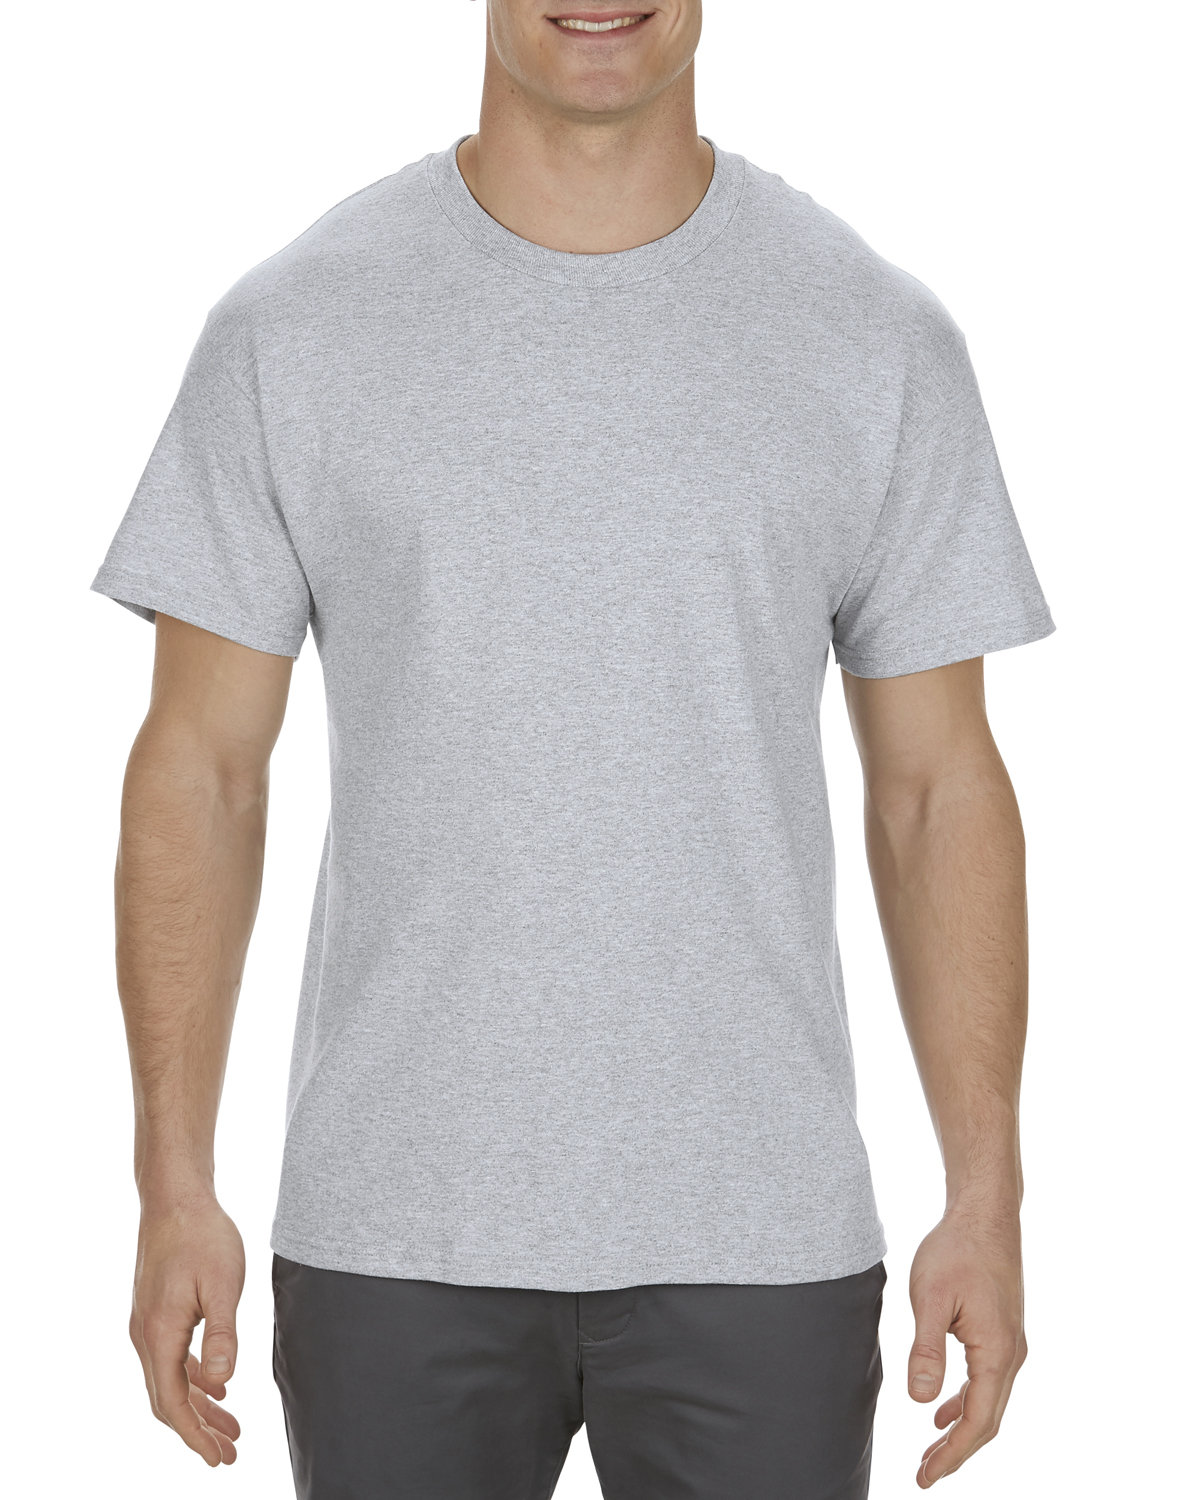 Alstyle Adult 5.1 oz., 100% Soft Spun Cotton T-Shirt ATHLETIC HEATHER 